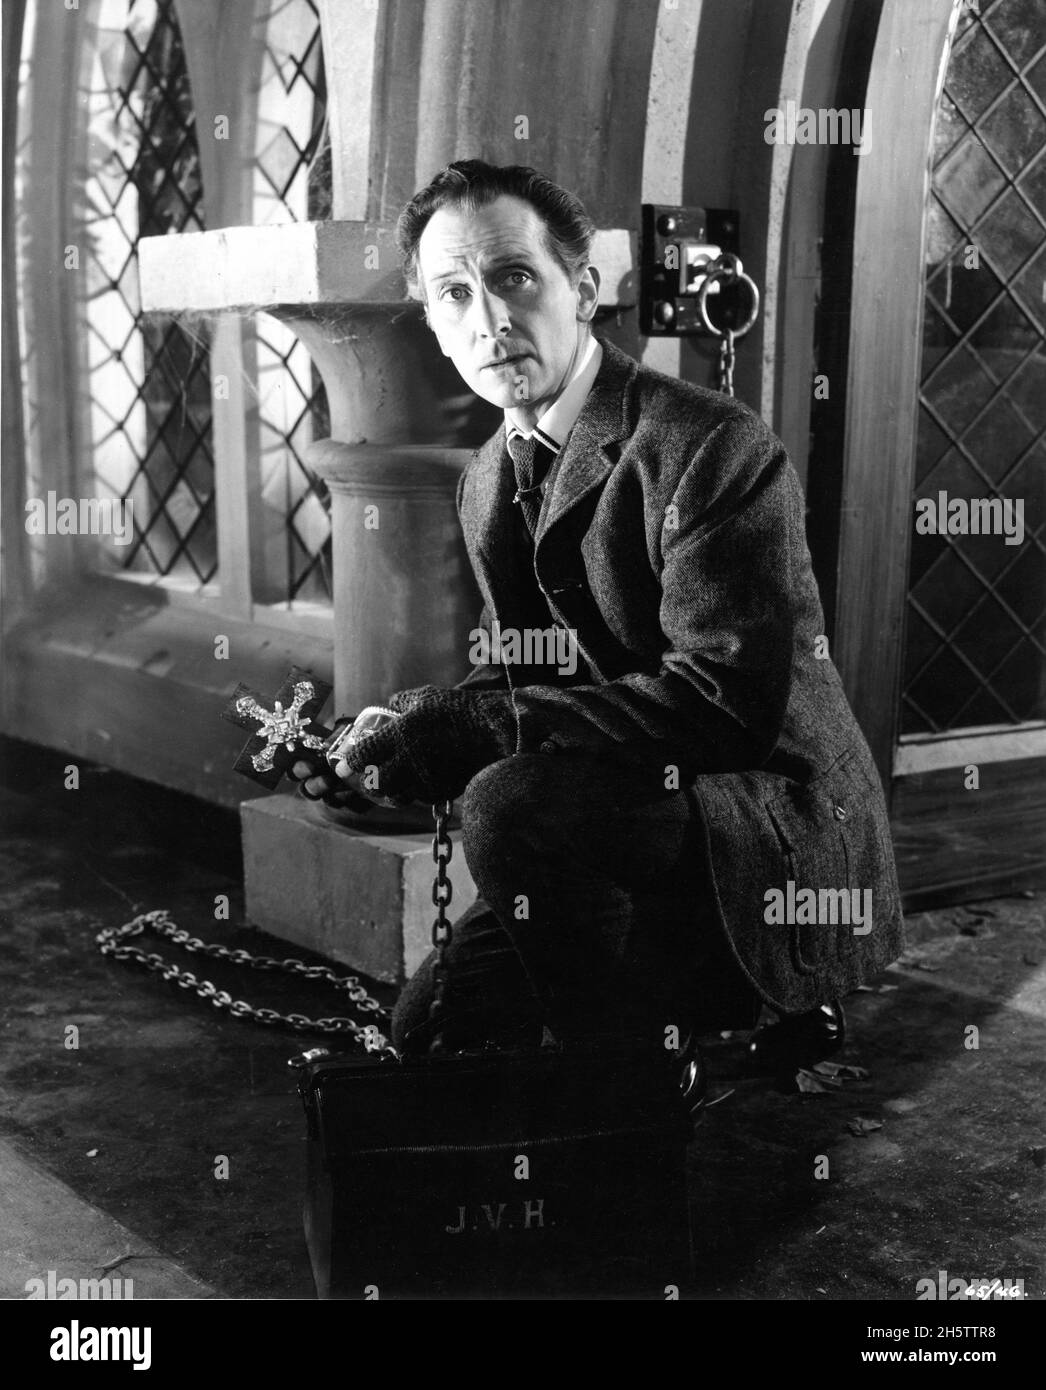 PETER CUSHING Portrait comme Docteur / Professeur Abraham Van Helsing dans LES ÉPOUSES DE DRACULA réalisateur 1960 TERENCE FISHER Hammer films / Rank film Distributors (Royaume-Uni) / Universal Pictures (Etats-Unis) Banque D'Images